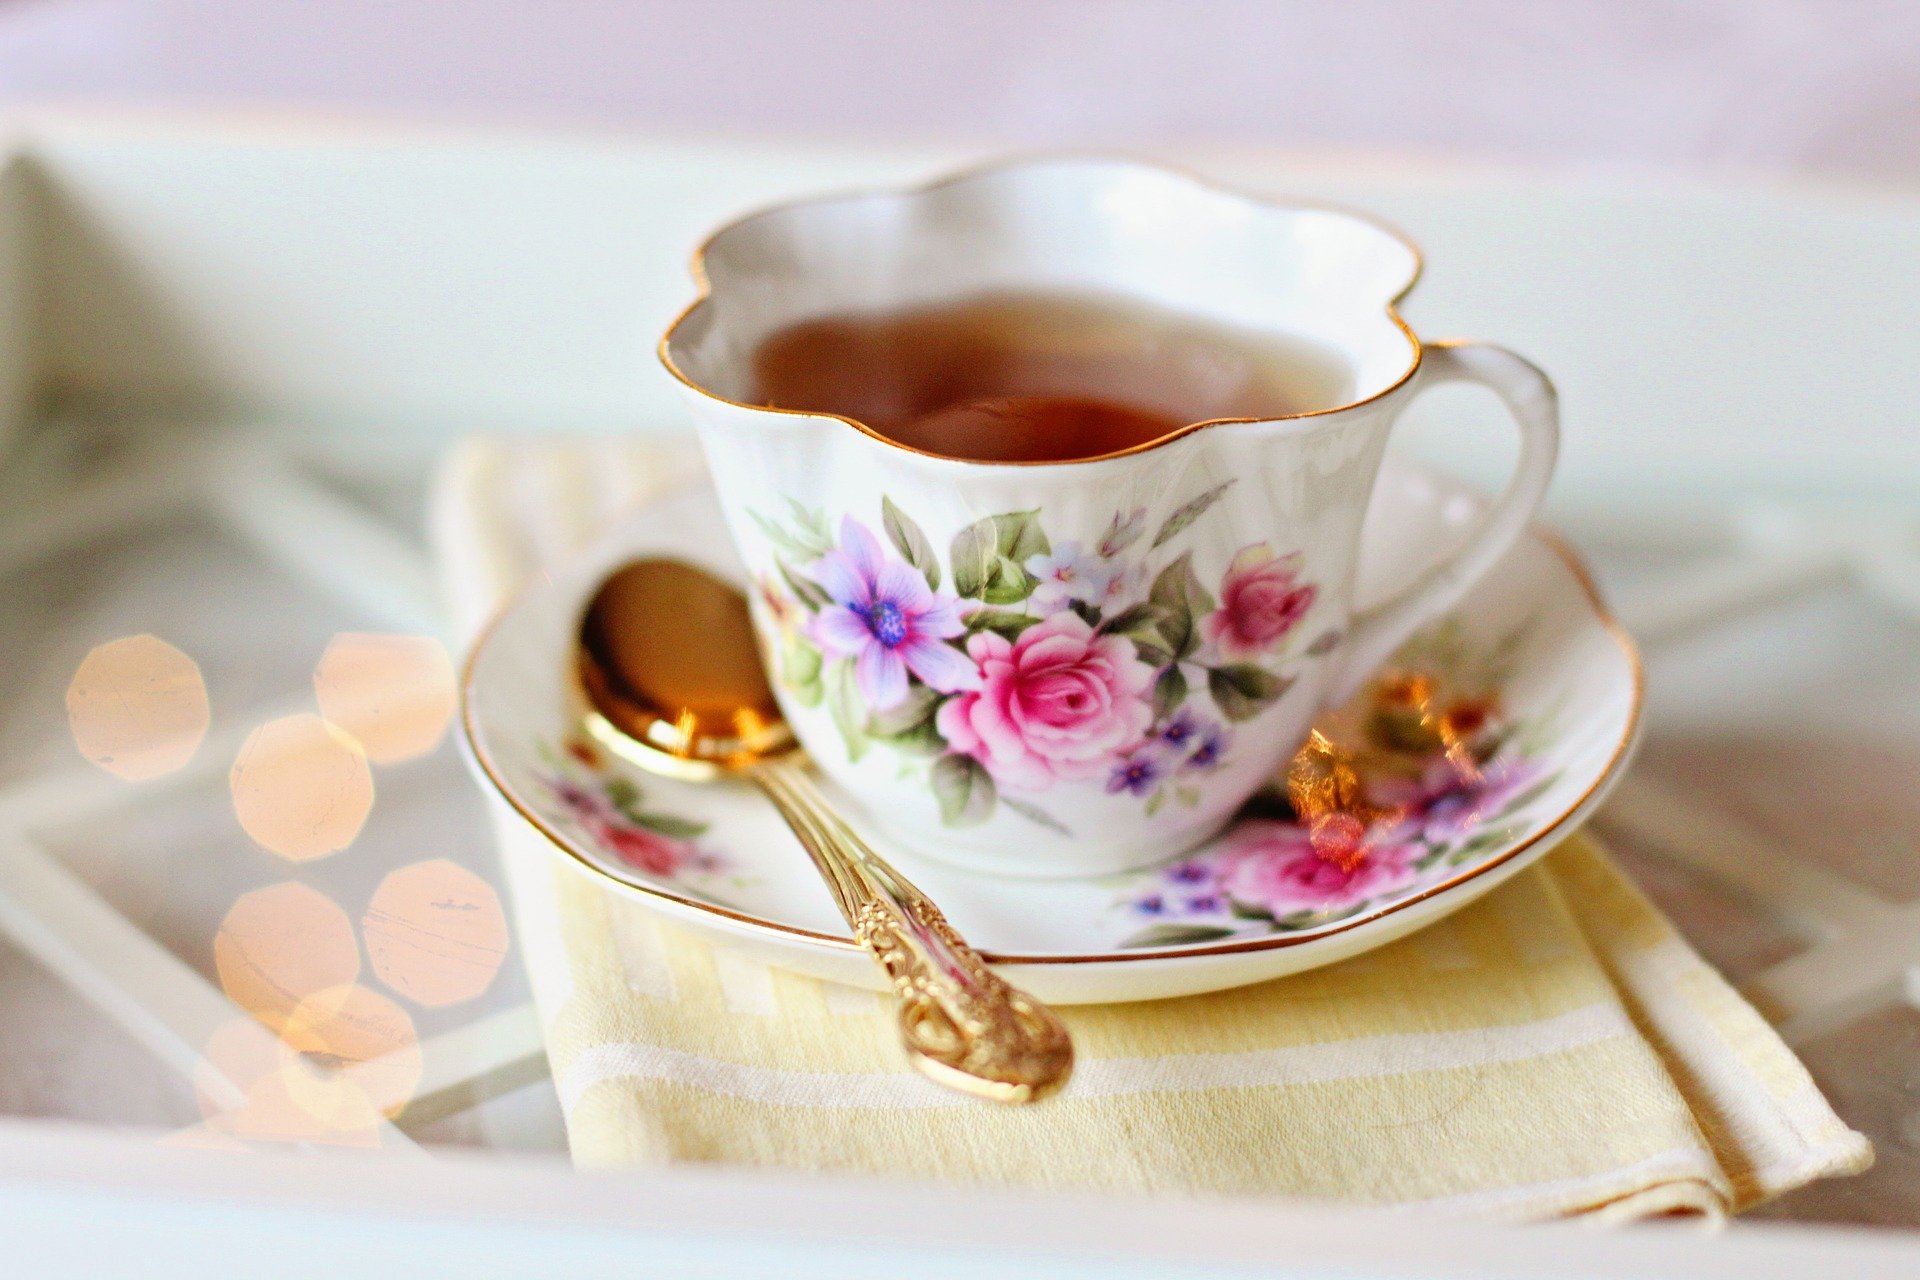 Geh und trinke eine Tasse Tee - Friedensritual - Lebensvision braucht Frieden - Soulfit Factory e.V. - pixabay - Terr C